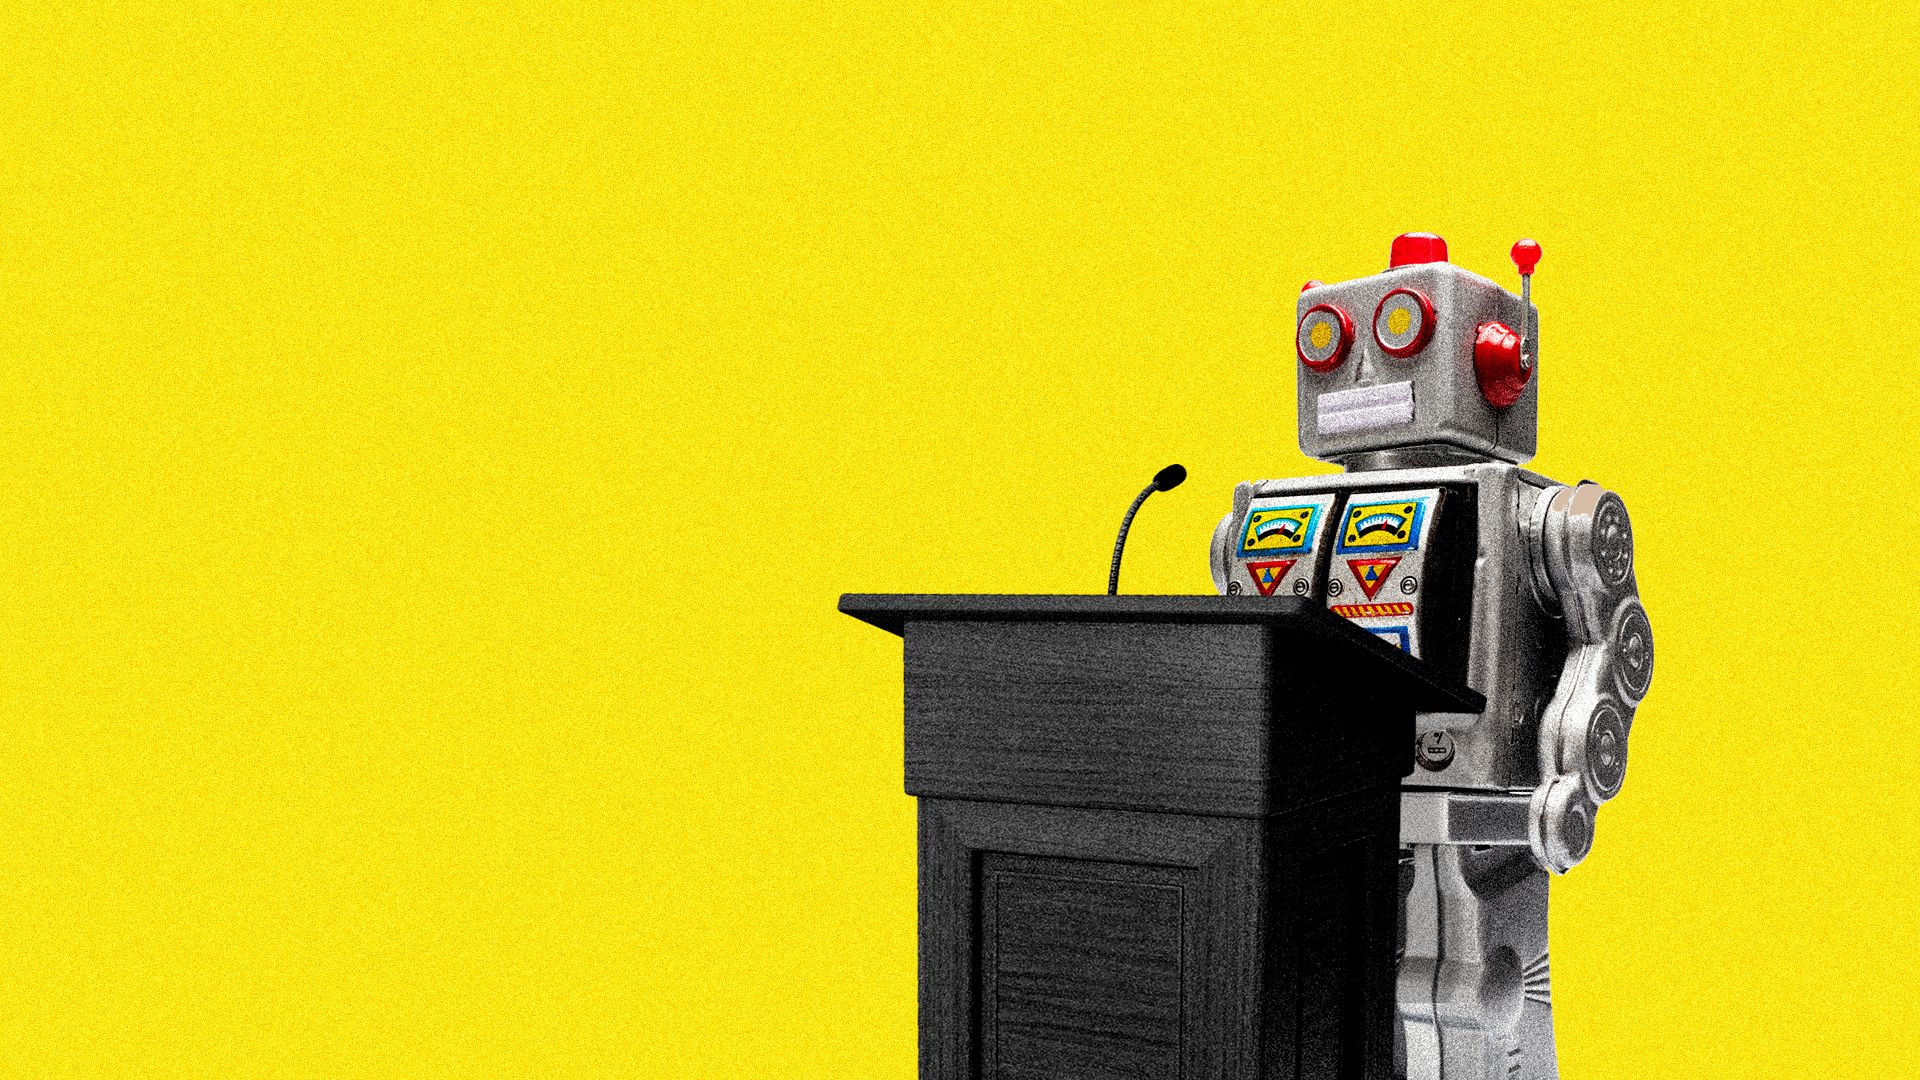 A robot stands behind a podium